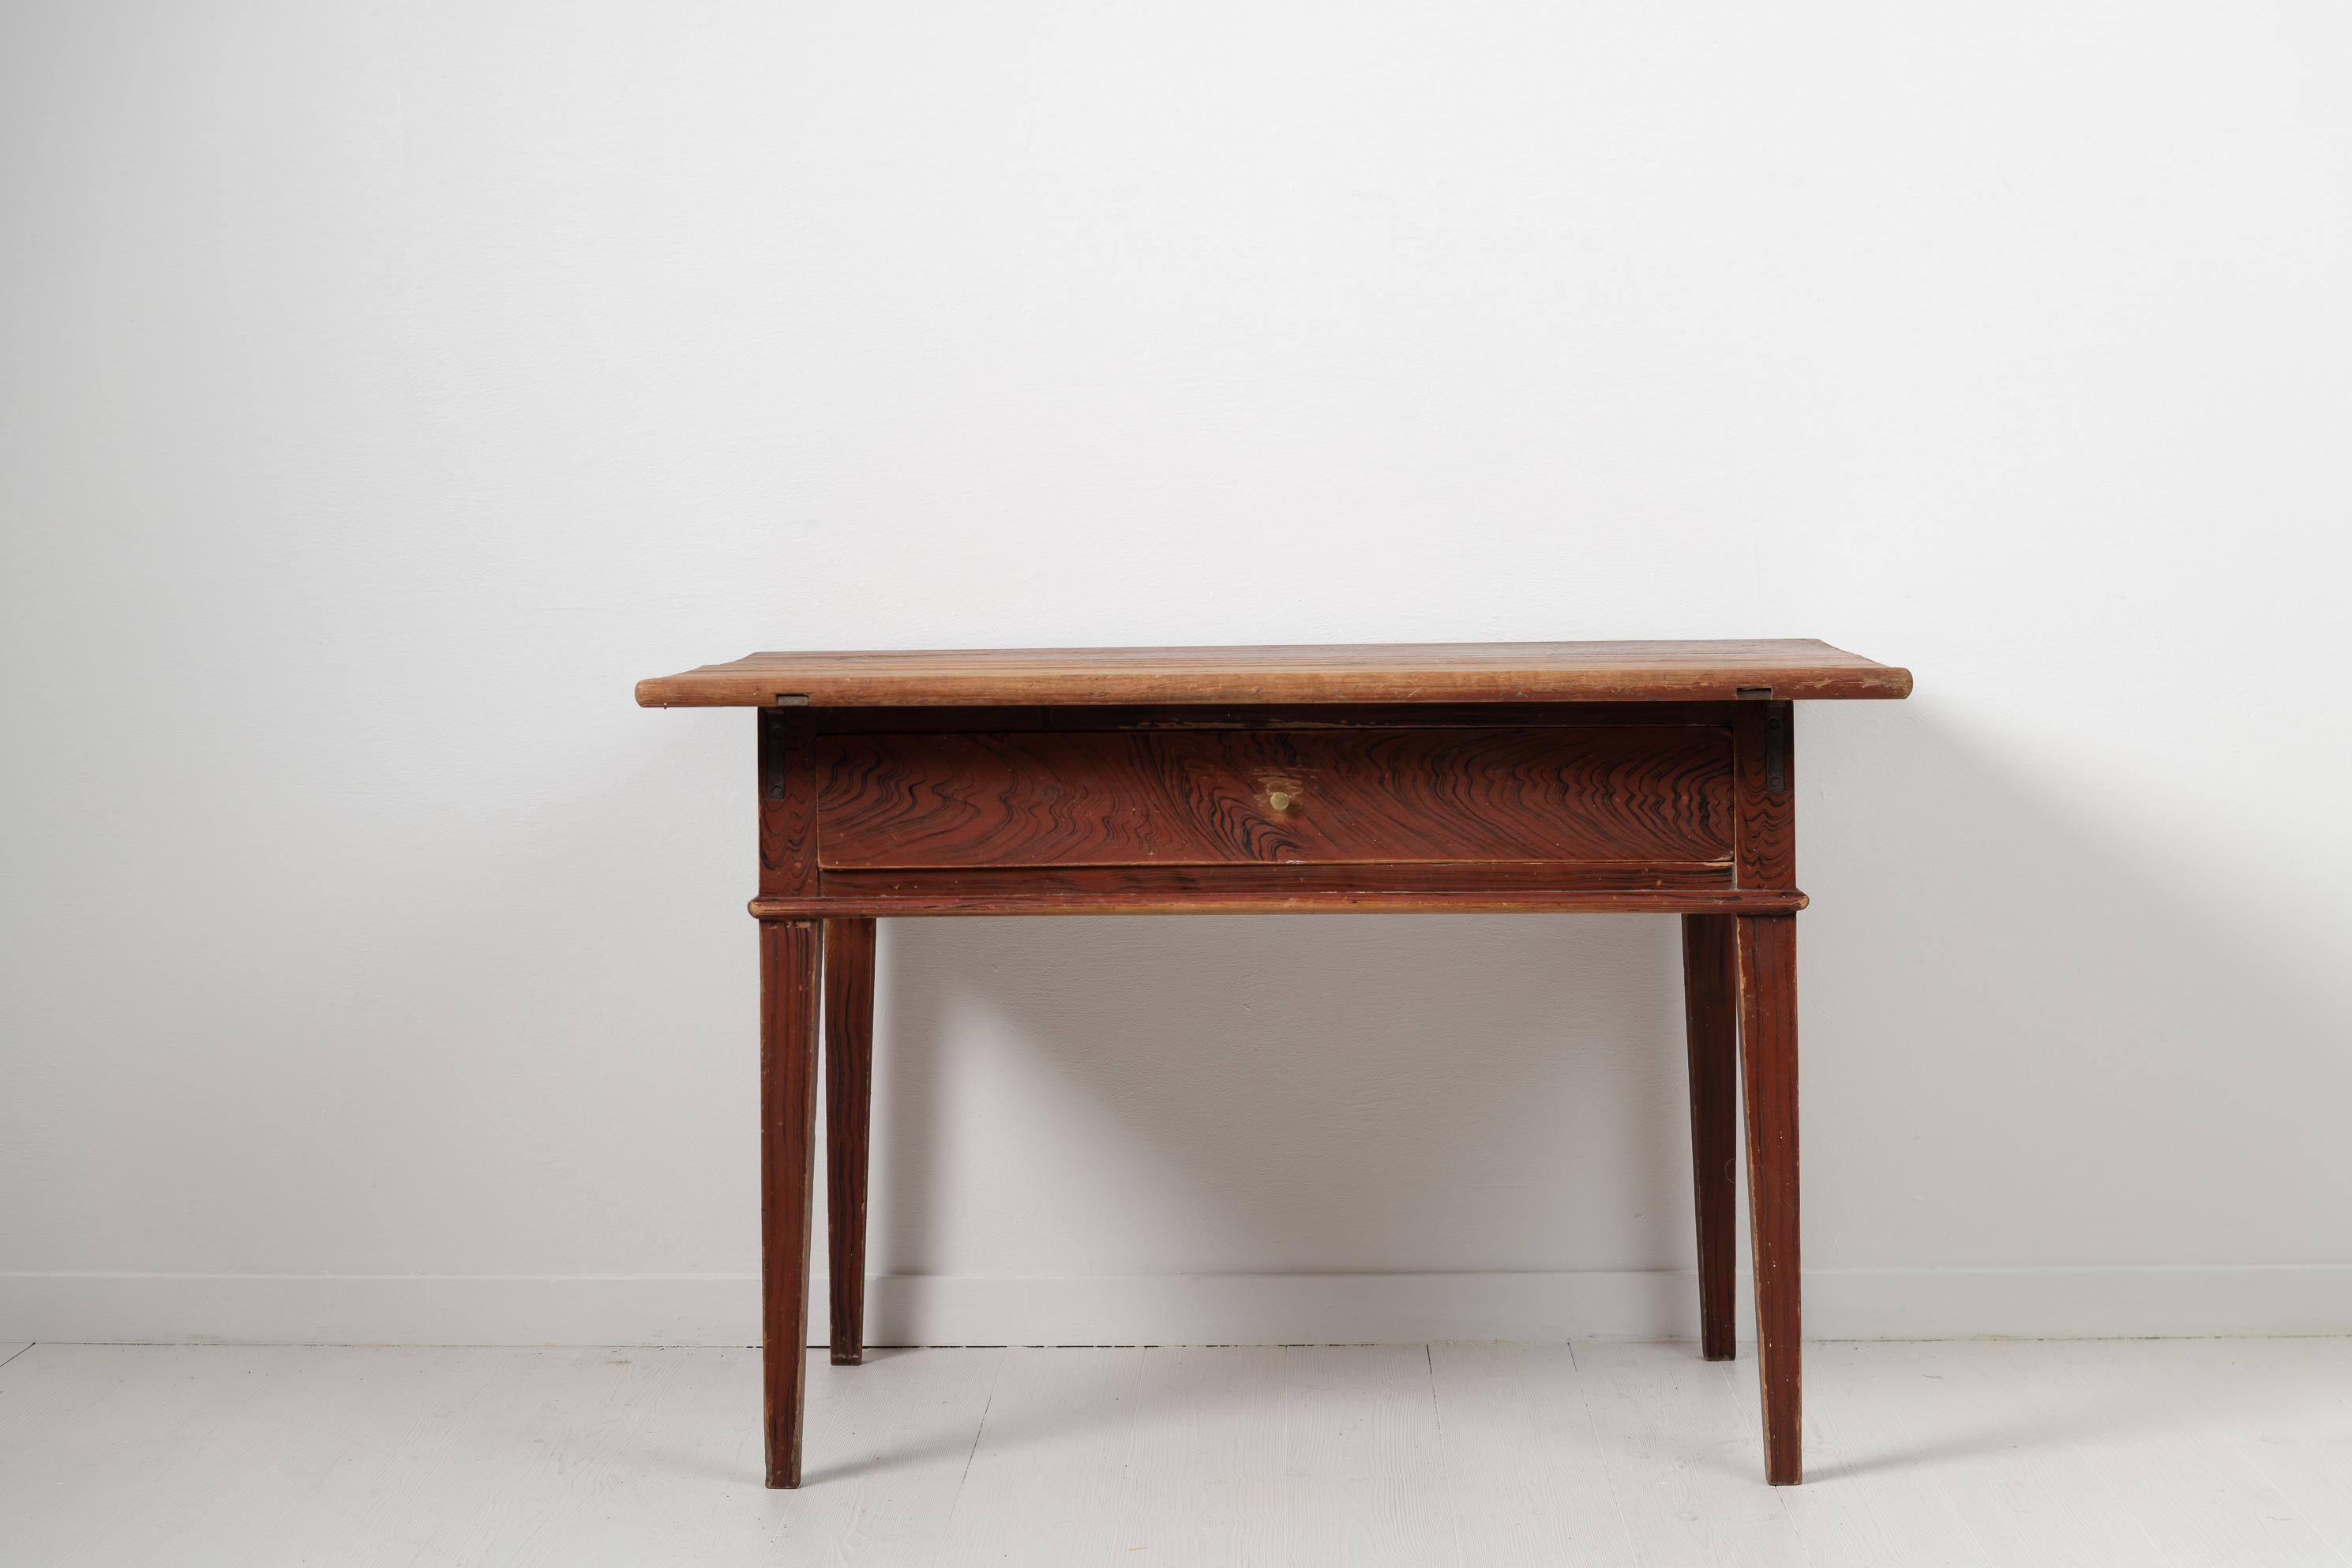 Nordschwedischer Beistelltisch im gustavianischen Stil aus den frühen 1800er Jahren. Der Tisch befindet sich in einem unversehrten Originalzustand mit der ursprünglichen Lackierung. Hergestellt aus Kiefer mit dem originalen Messinggriff an der